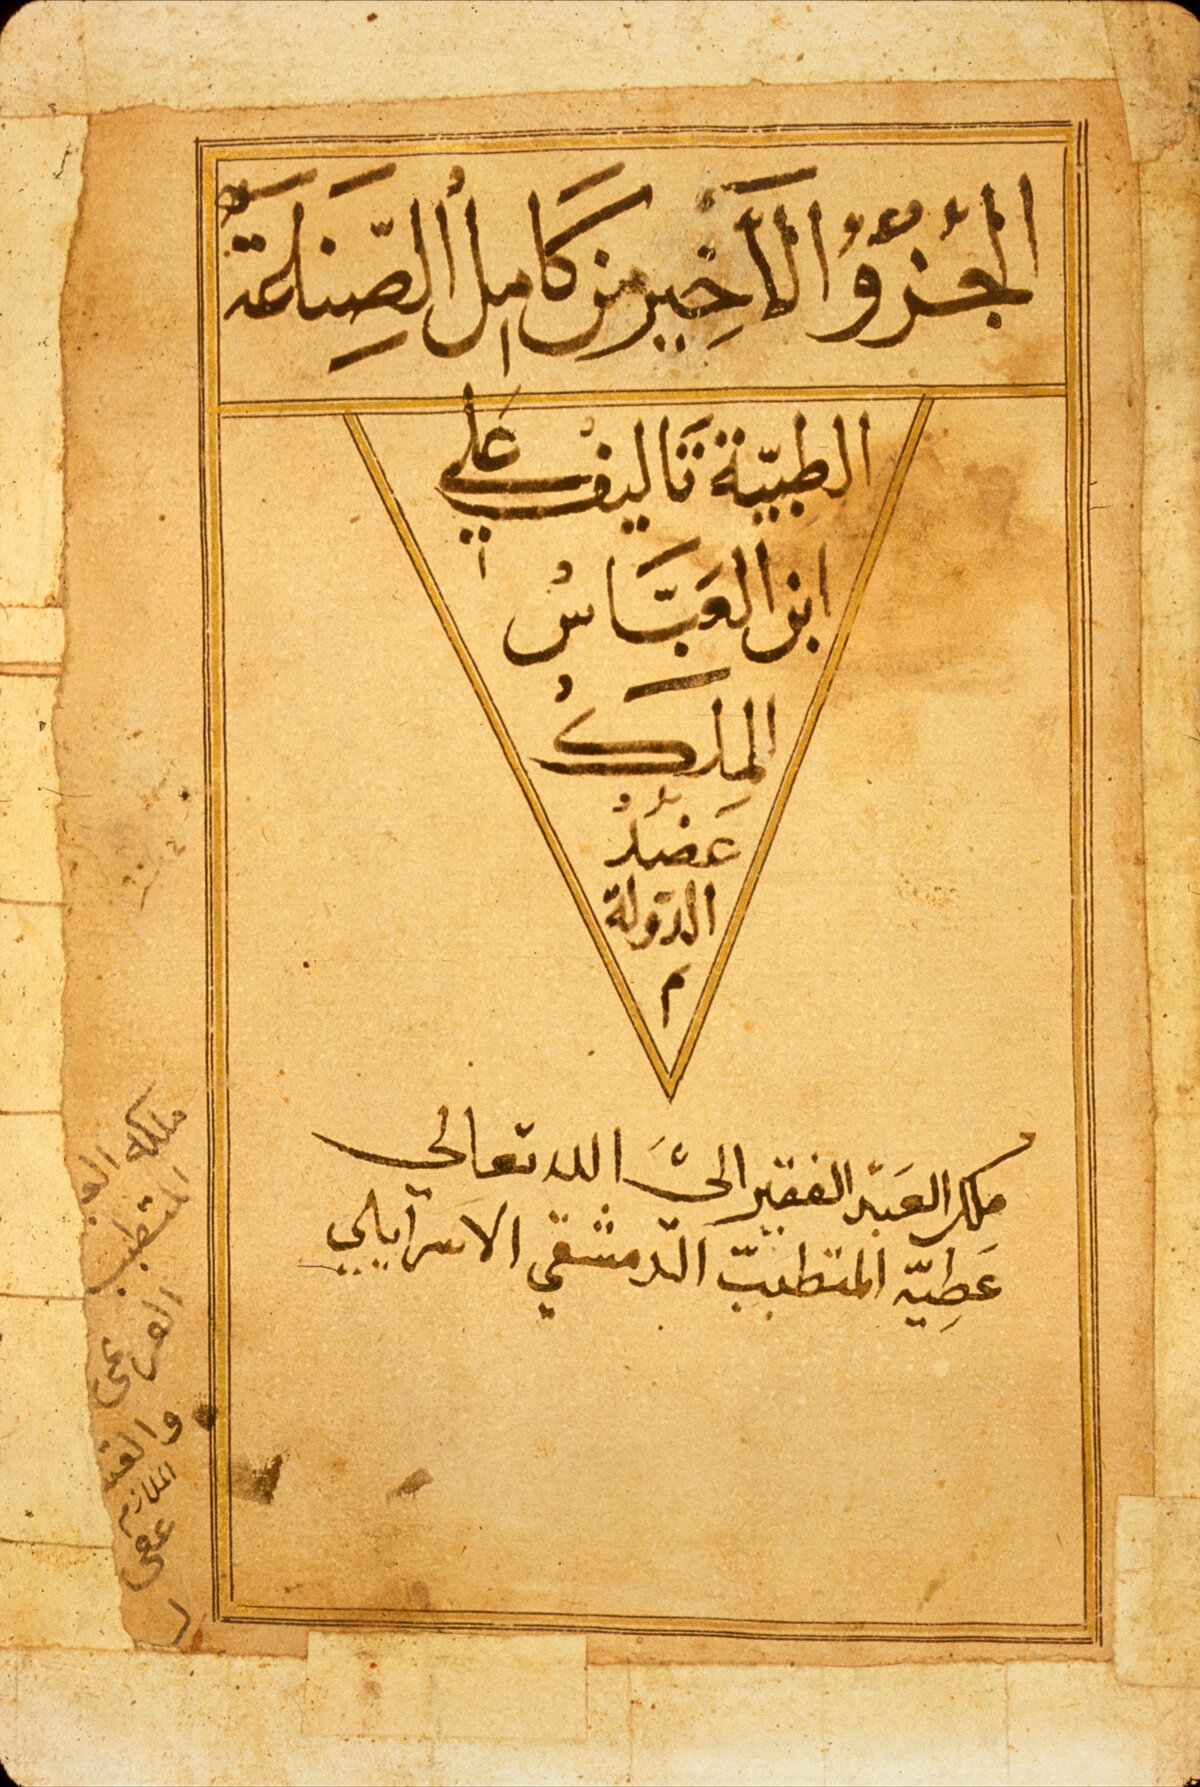  Beginning of the last part of Al-Majūsī's Kitāb al-Shāmil fi al-Ṭibb Ms NLM A 26.1, fol. 1v 